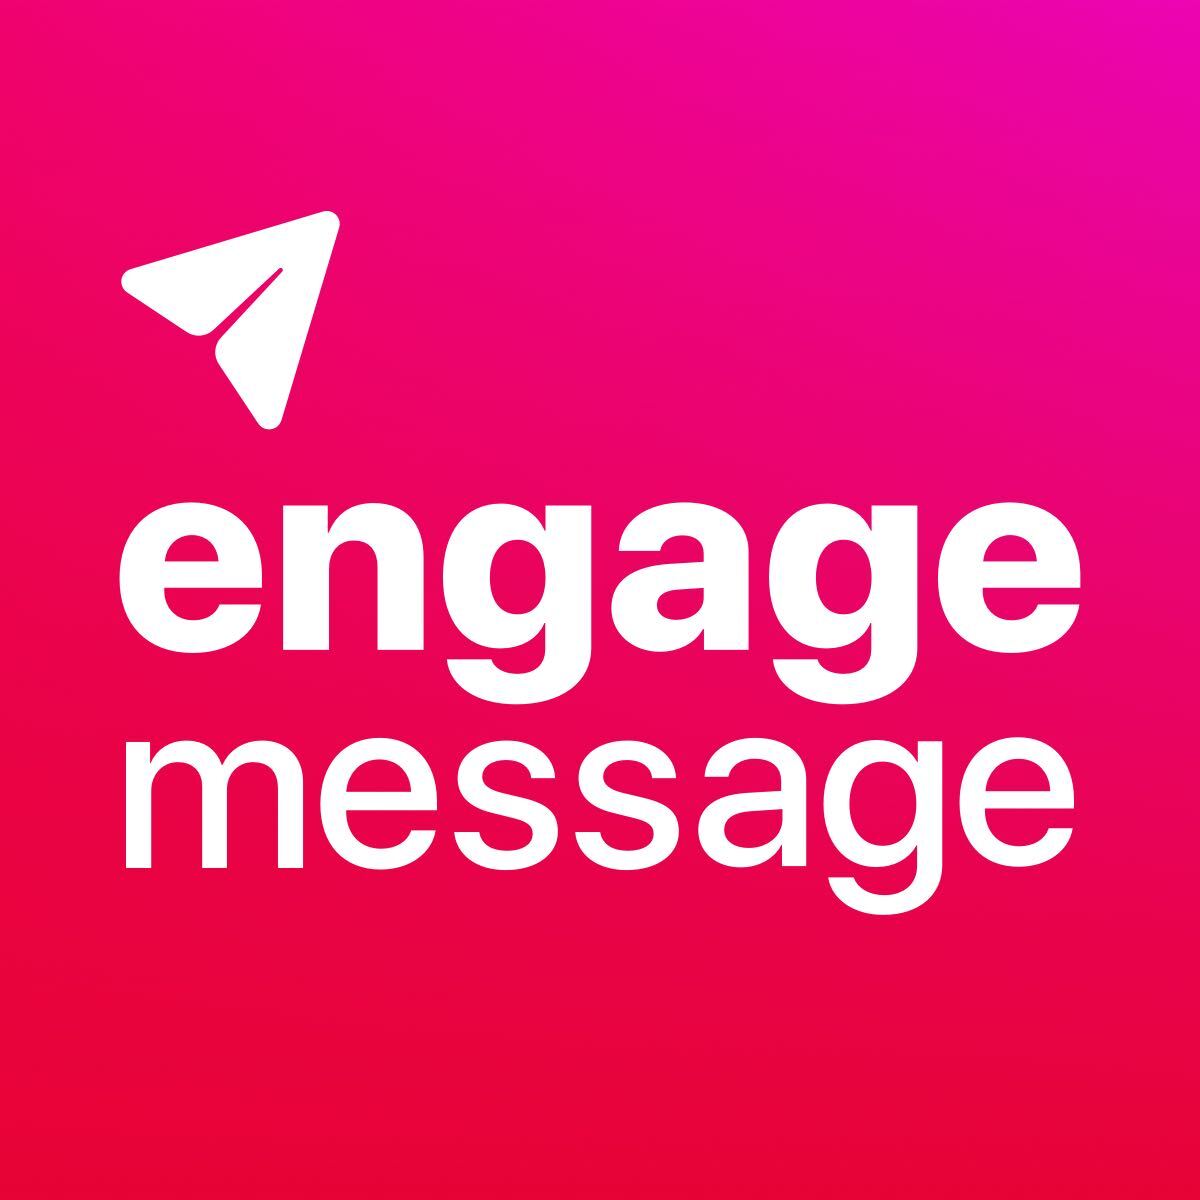 EngageMessage: Email Marketing